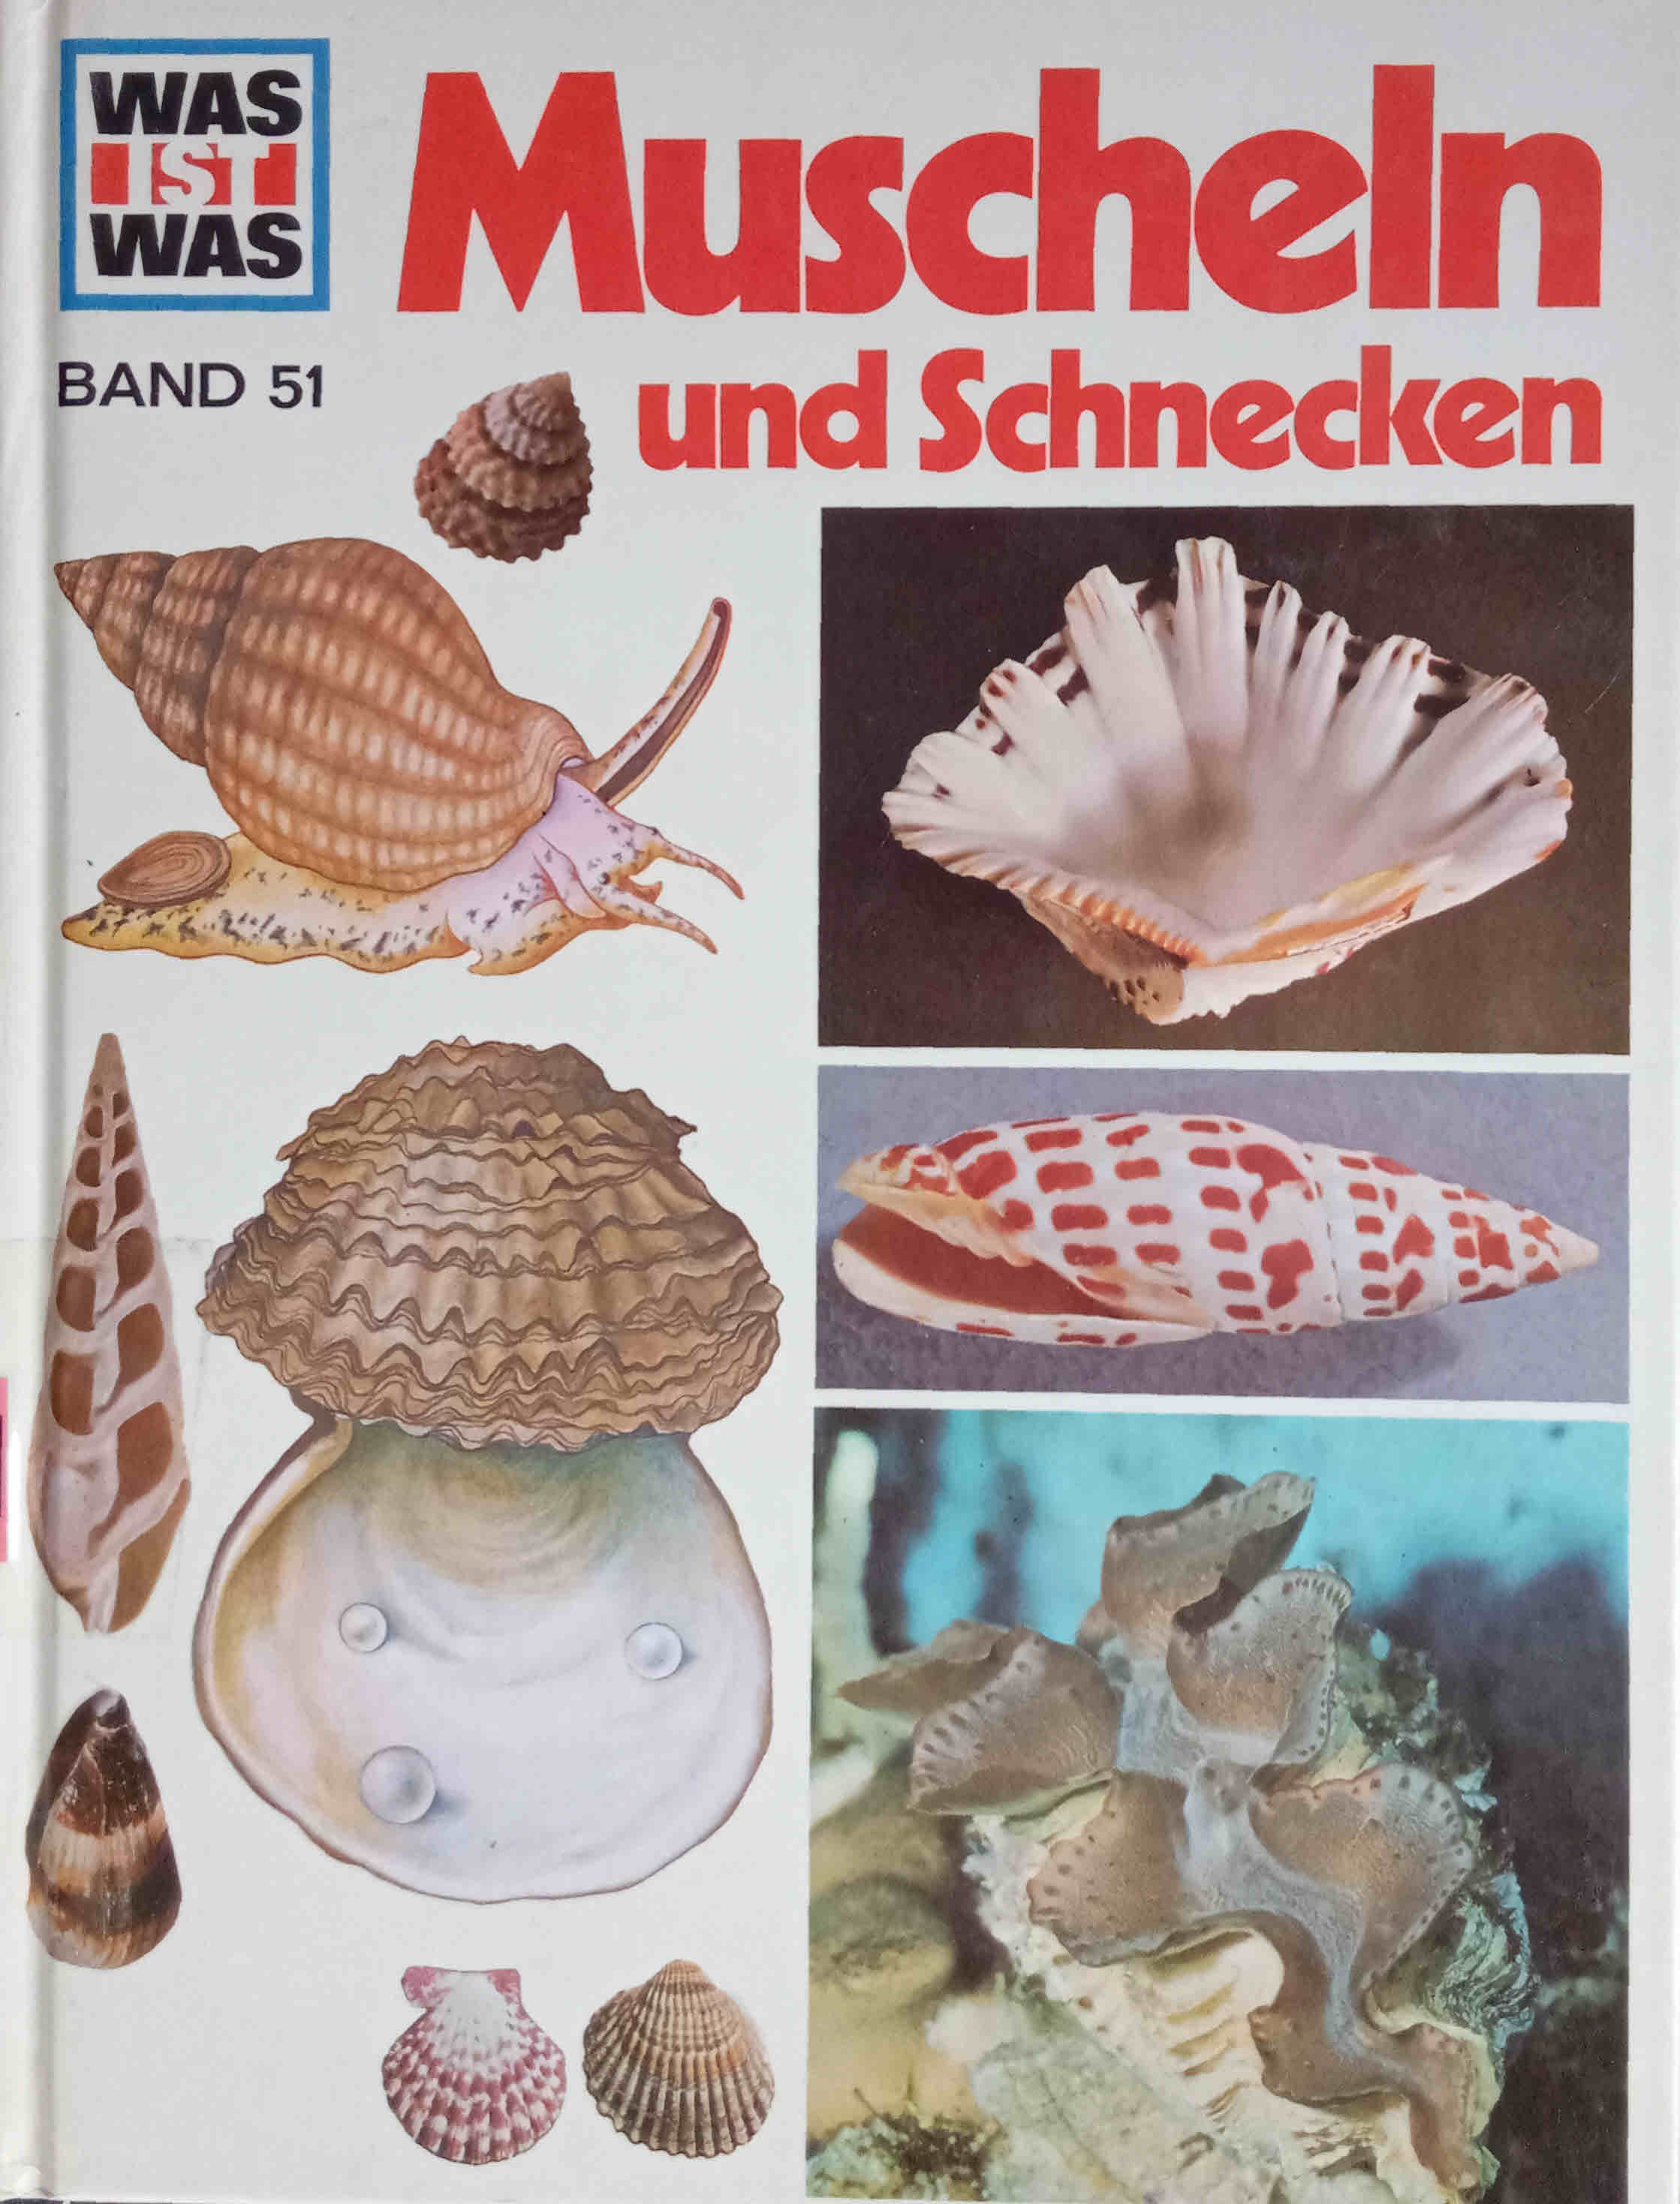 Muscheln und Schnecken. von. Ill. von Anne-Lies Ihme. Fotos von Walter Hähnel. Red.: Käte Hart u. Manfred Konrad / Was ist was ; Bd. 51 - Hähnel, Walter